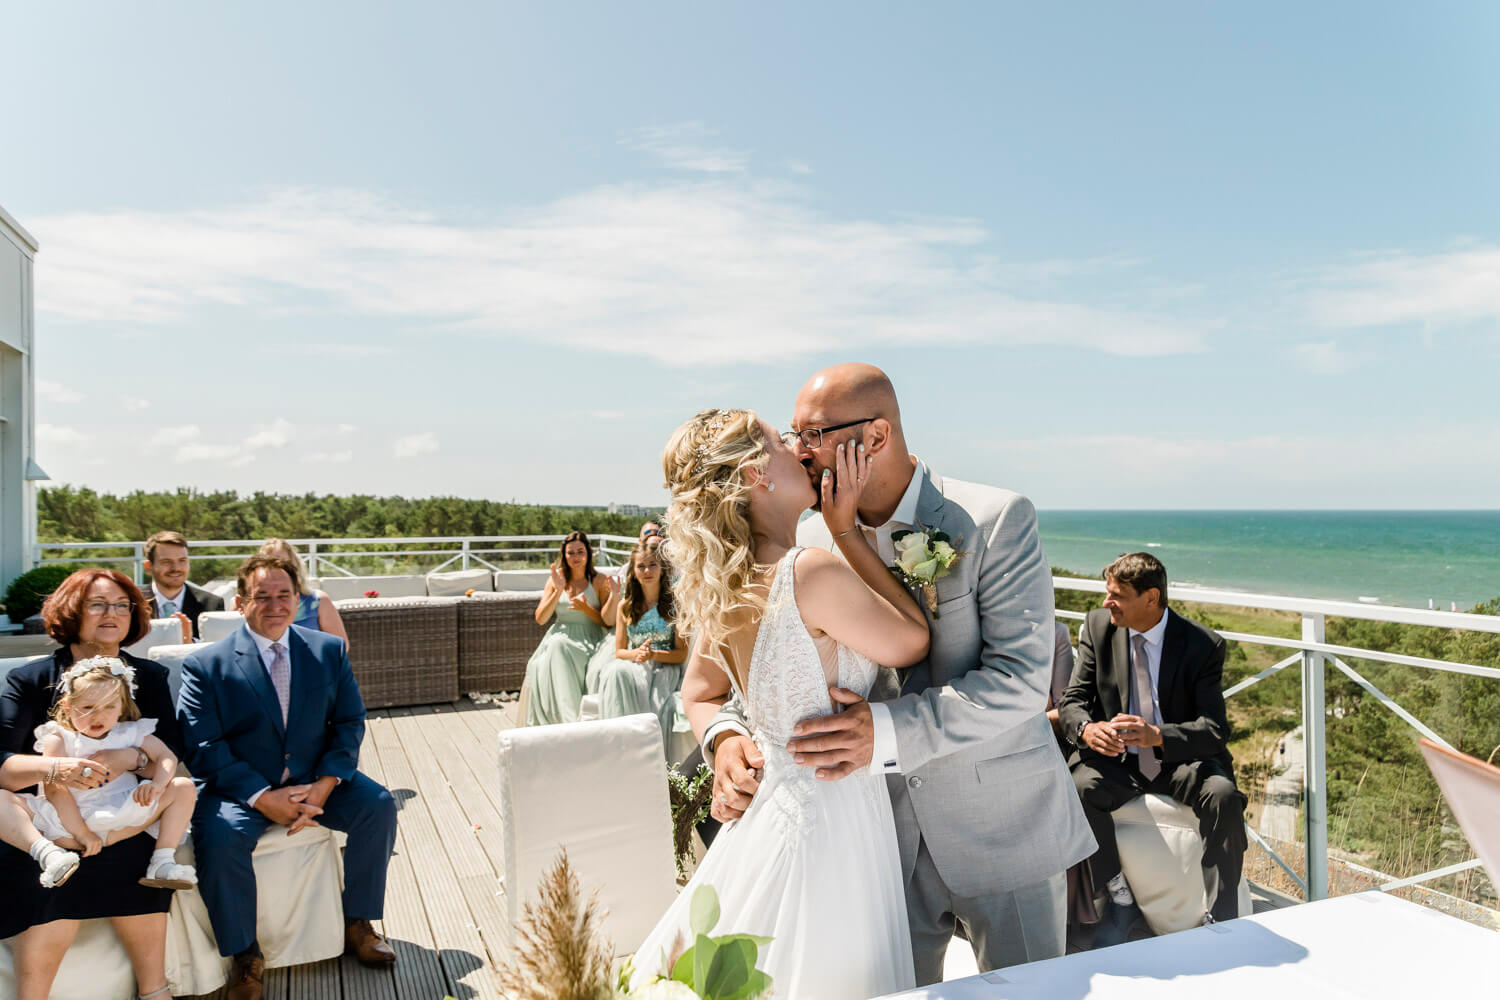 Der erste Kuss als verheiratetes Ehepaar mit Blick auf das Meer. Hochzeitsfotograf an der Ostsee.